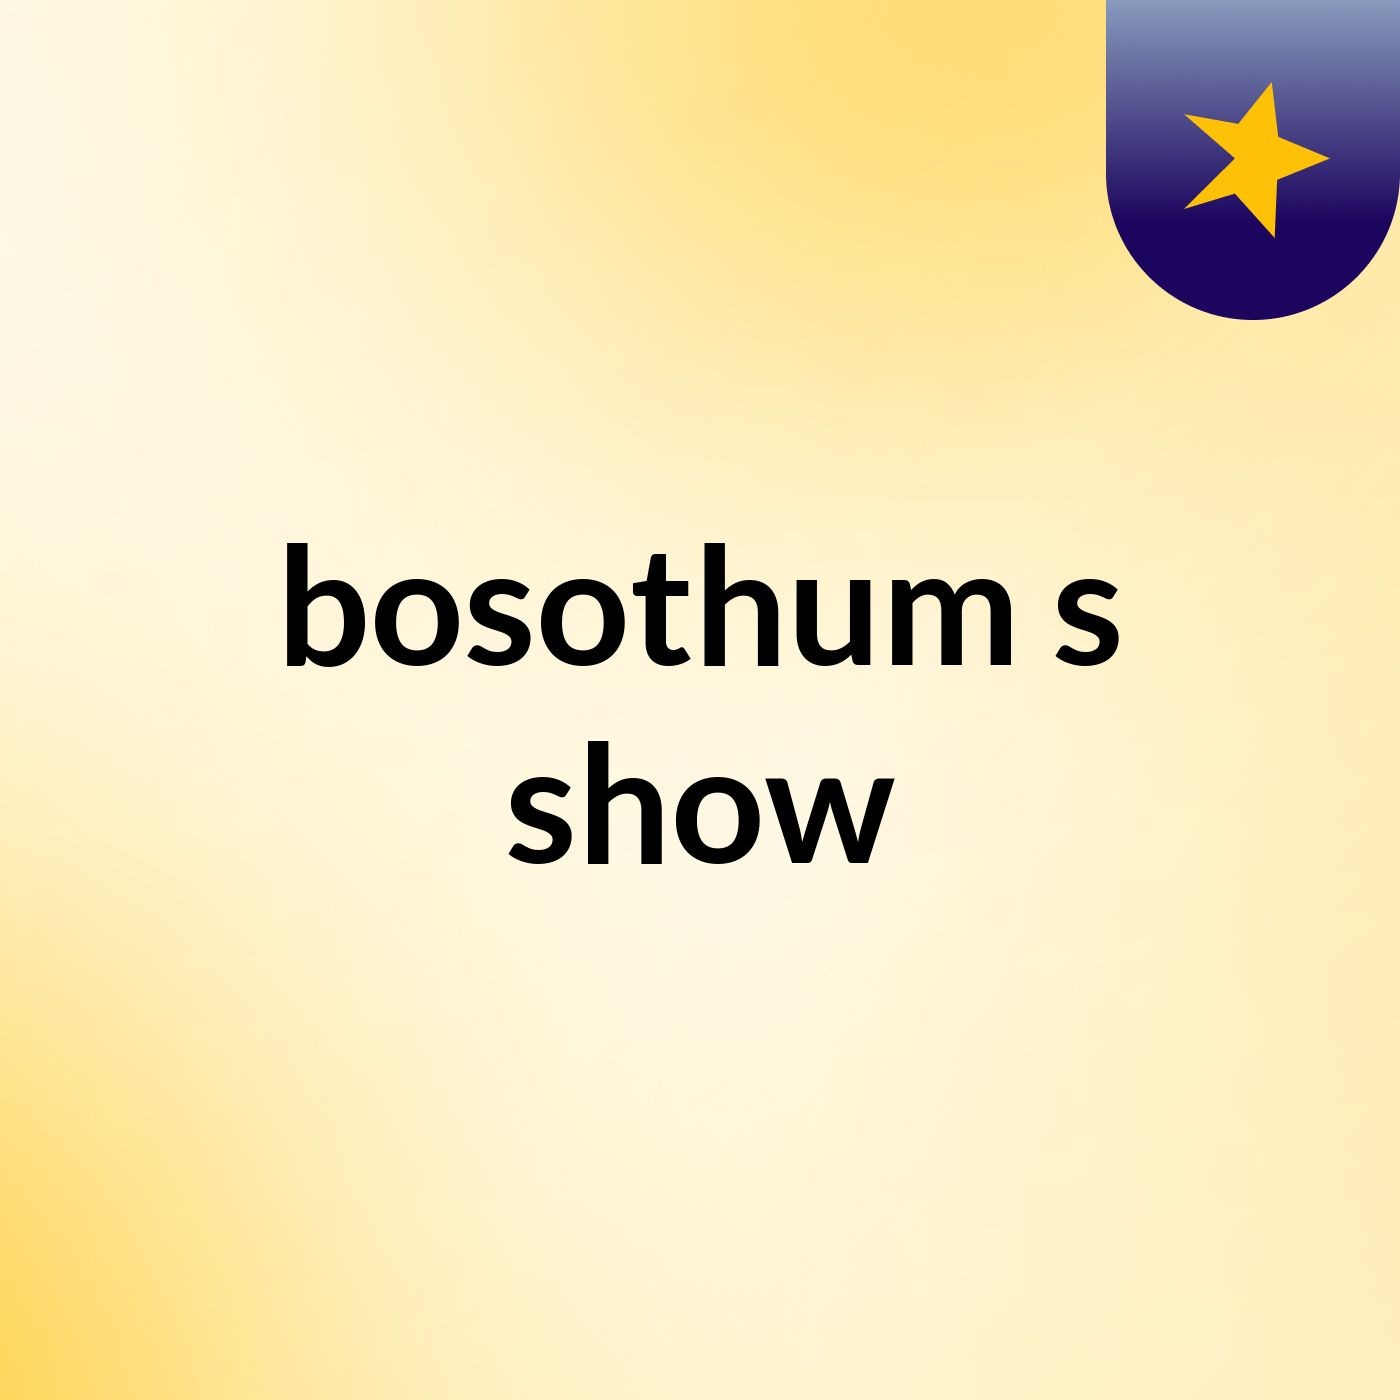 bosothum